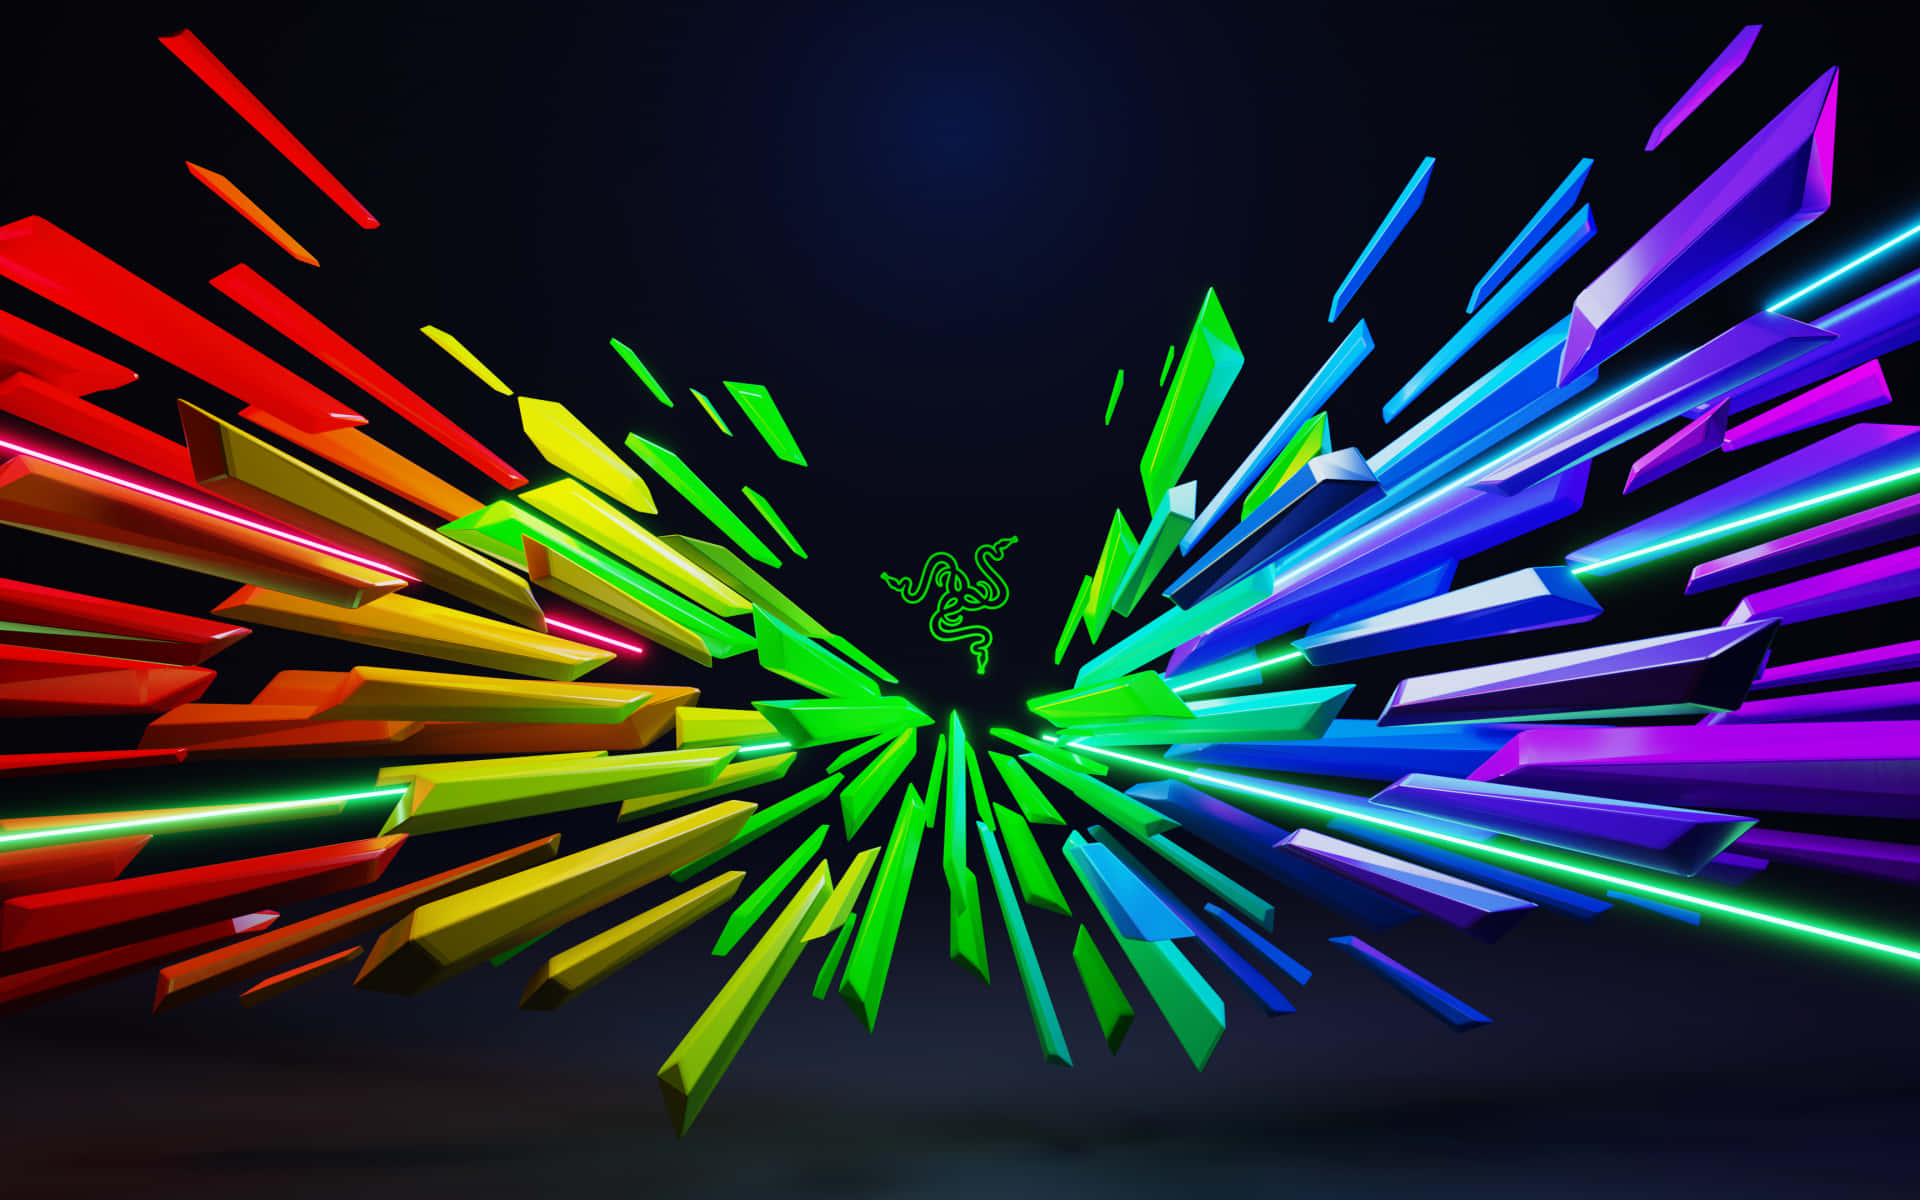 Sumérgeteen Una Experiencia De Juego Inmersiva Con Neon Gaming. Fondo de pantalla